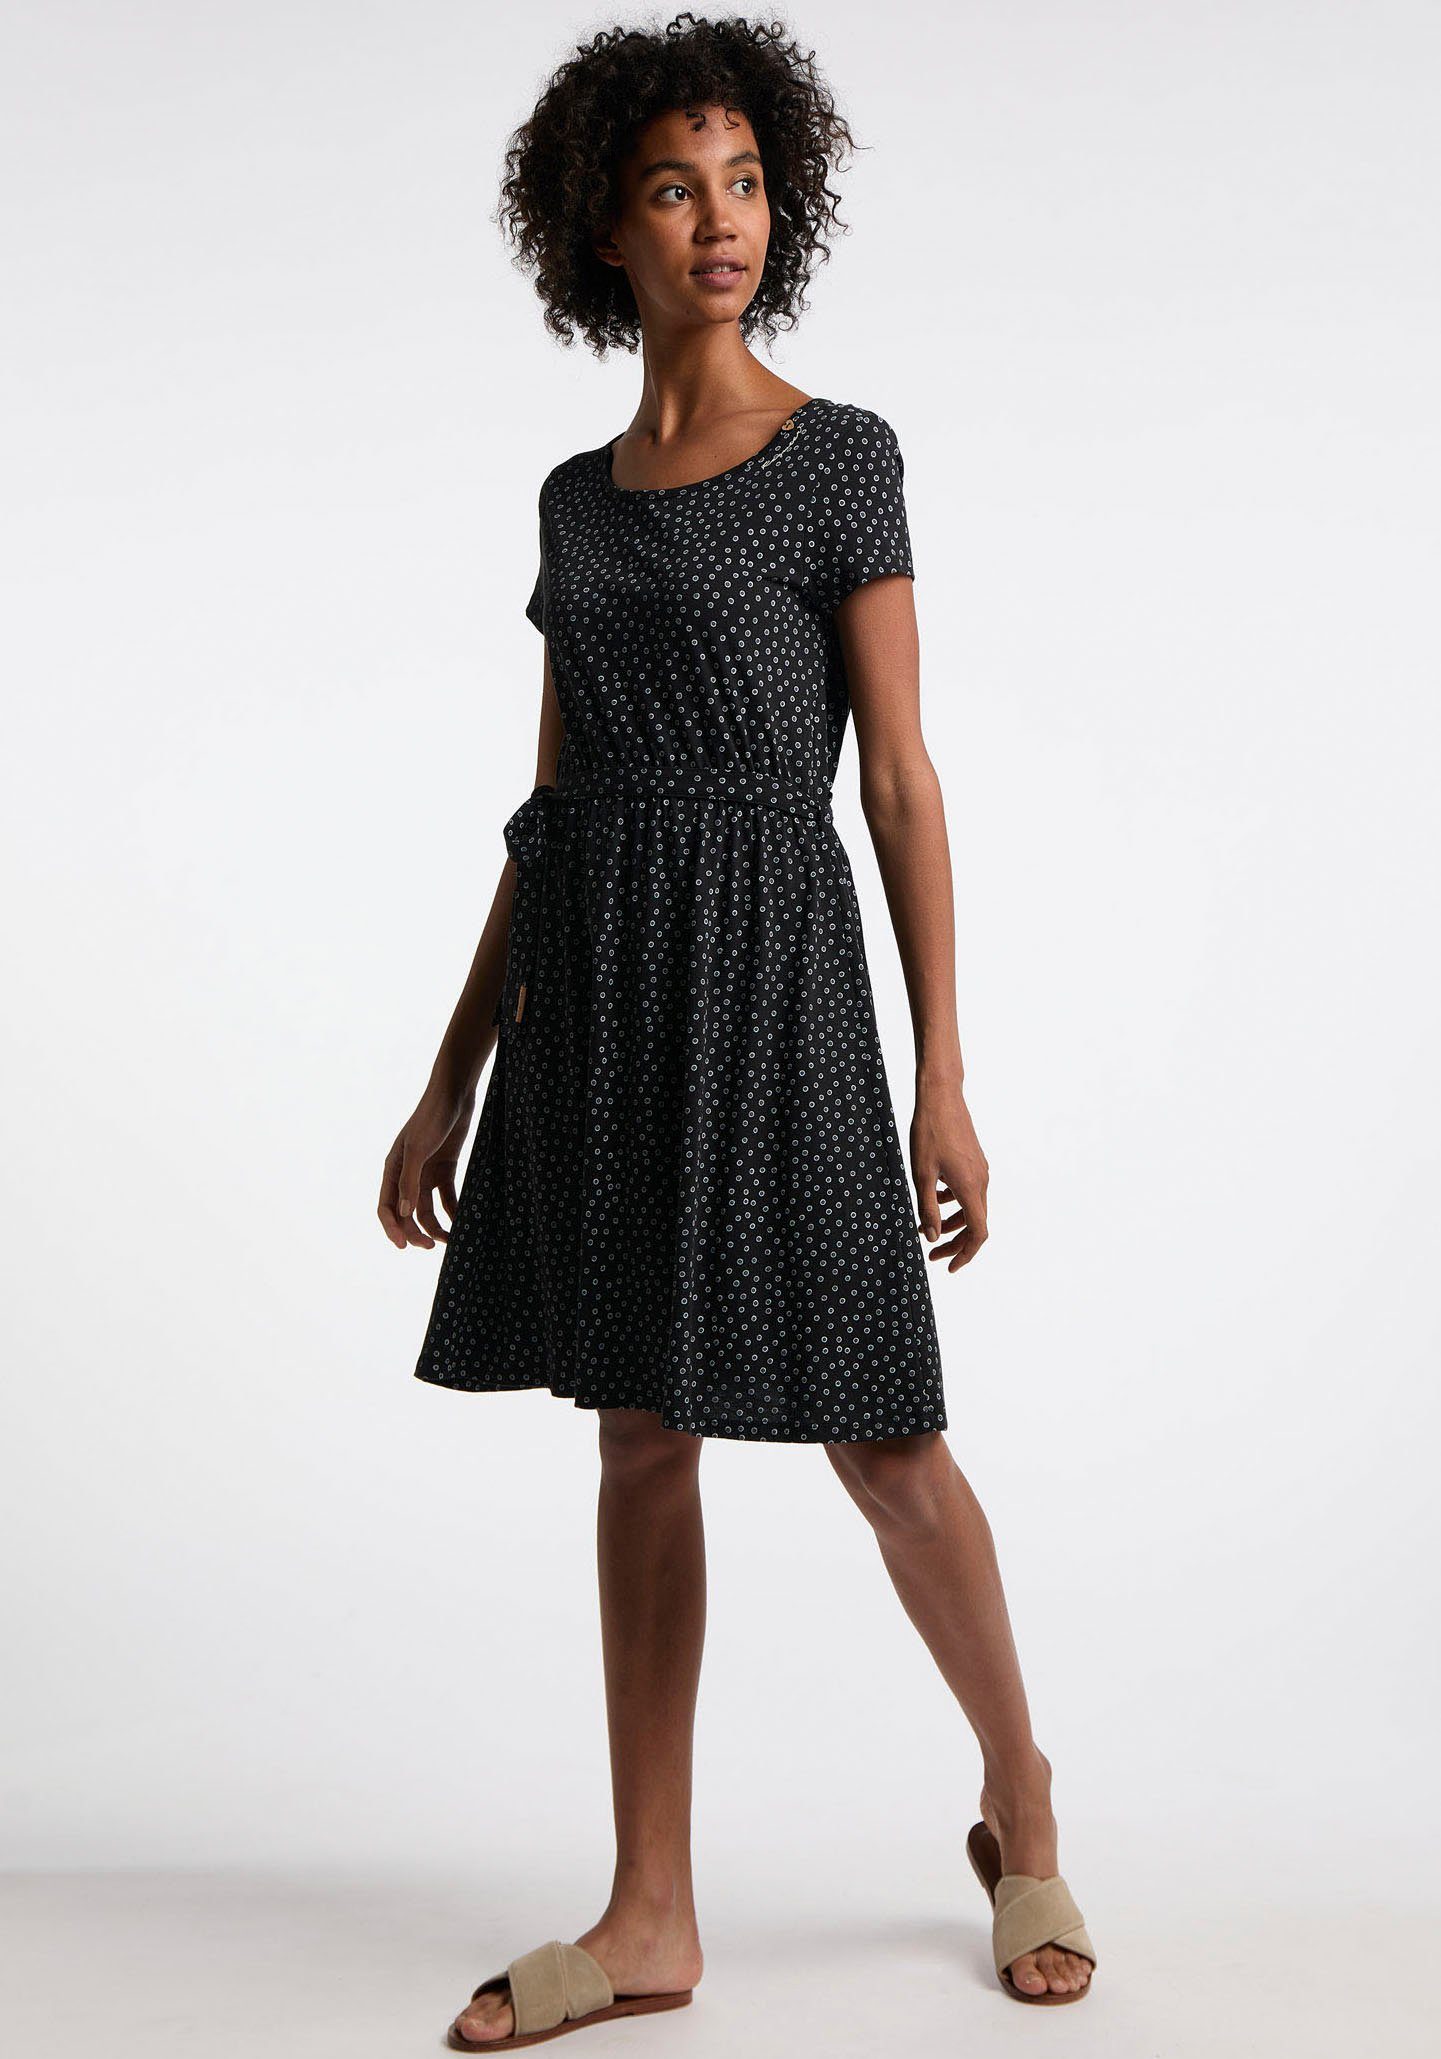 tollem mit Allover schwarz Punkte-Muster OLINA Sommerkleid Ragwear ORGANIC DRESS